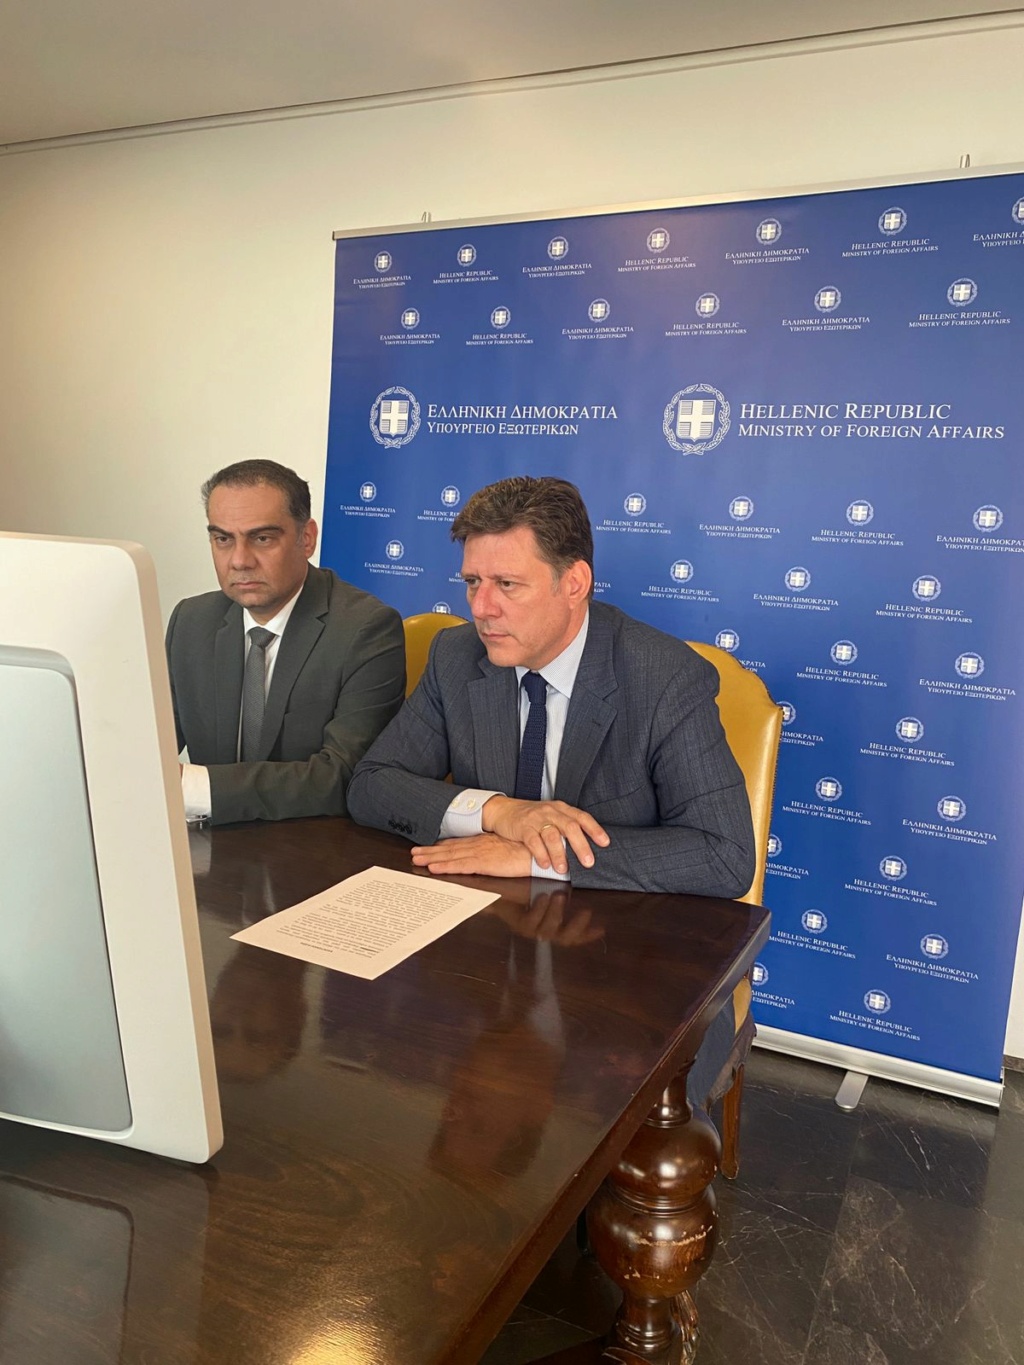 Συμμετοχή Αναπληρωτή Υπουργού Εξωτερικών Μιλτιάδη Βαρβιτσιώτη σε τηλεδιάσκεψη για την πρώτη δορυφορική επικοινωνία μεταξύ του Υπουργείου Εξωτερικών και Πρεσβειών της Ελλάδας στο εξωτερικό 01_eus10